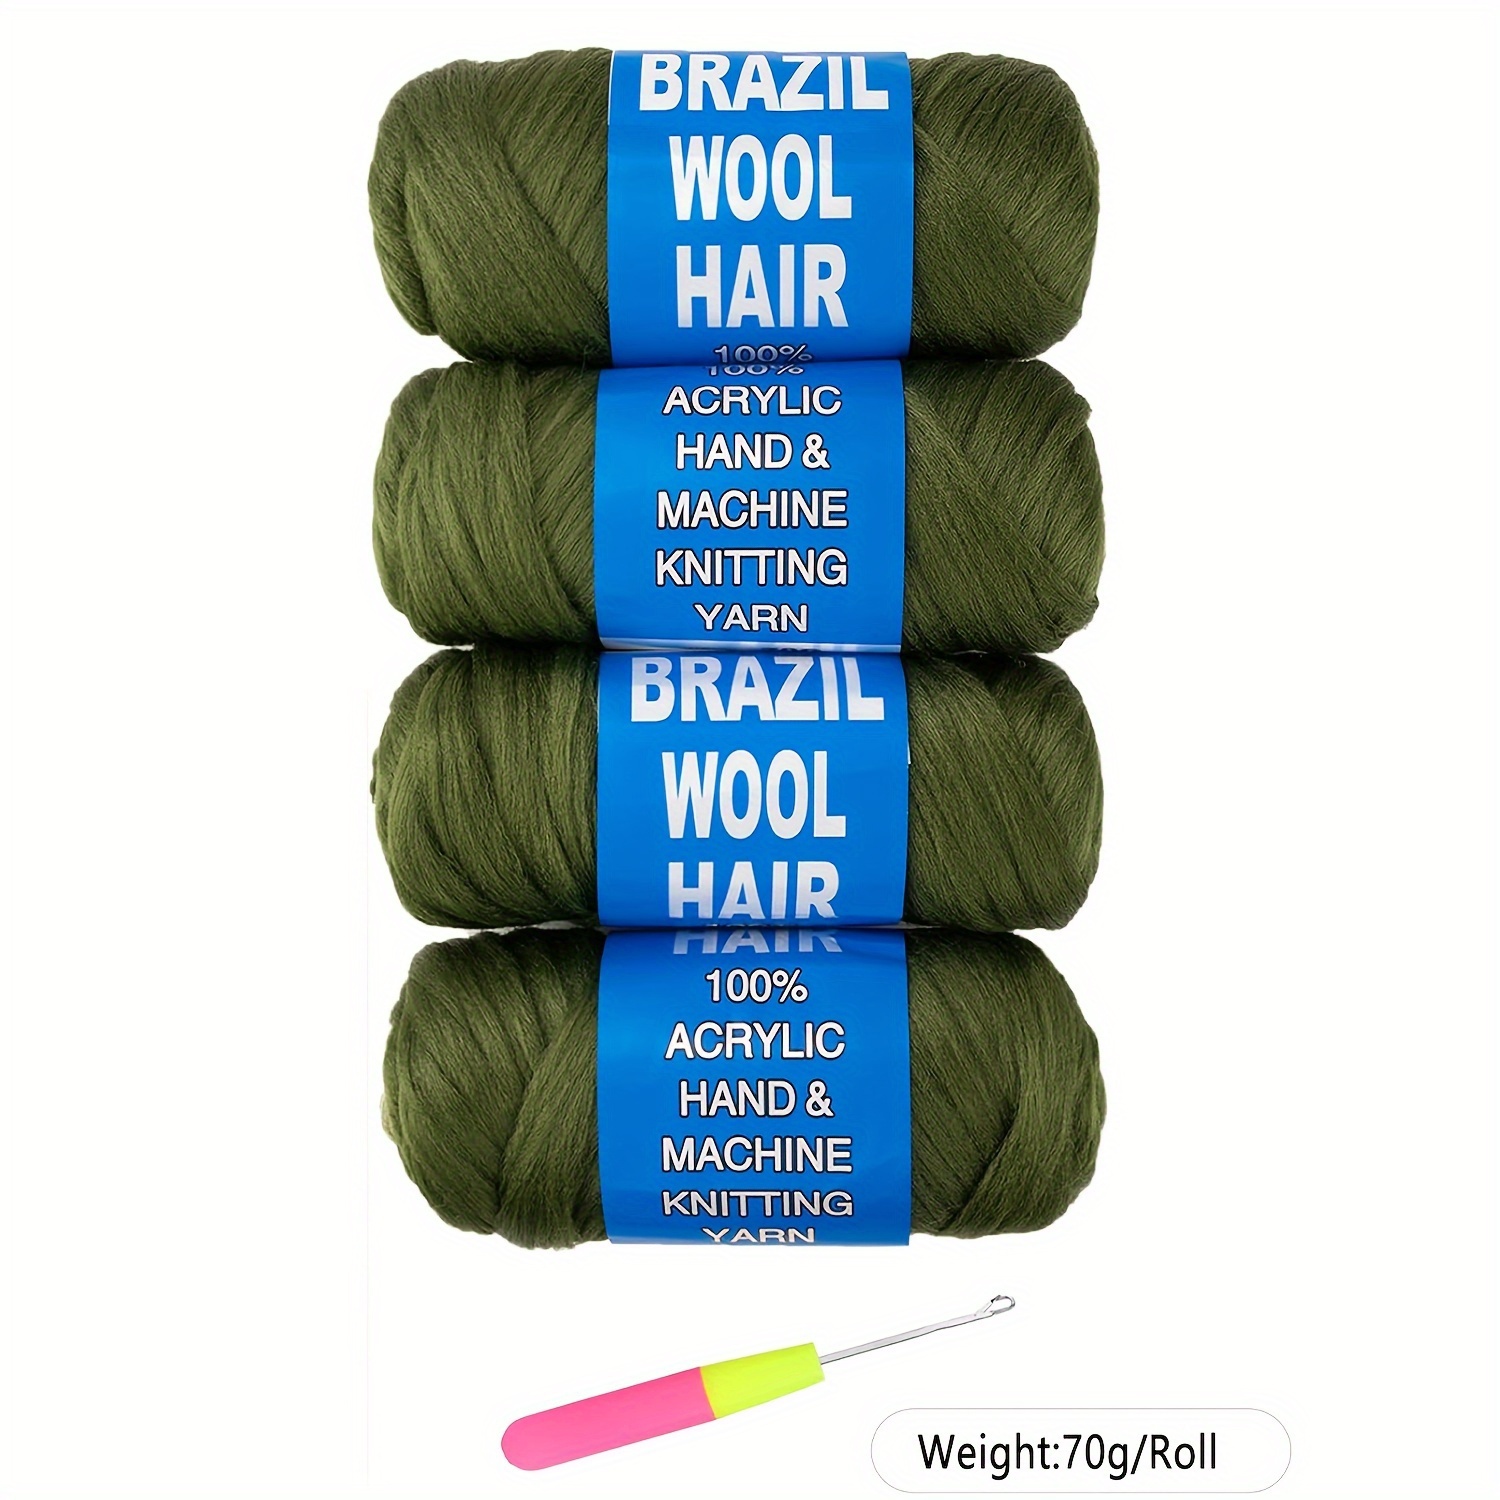 tranças grossas coloridas - Pesquisa Google  Coiffure crochet, Coiffure  crochet braids, Coiffures cheveux gris